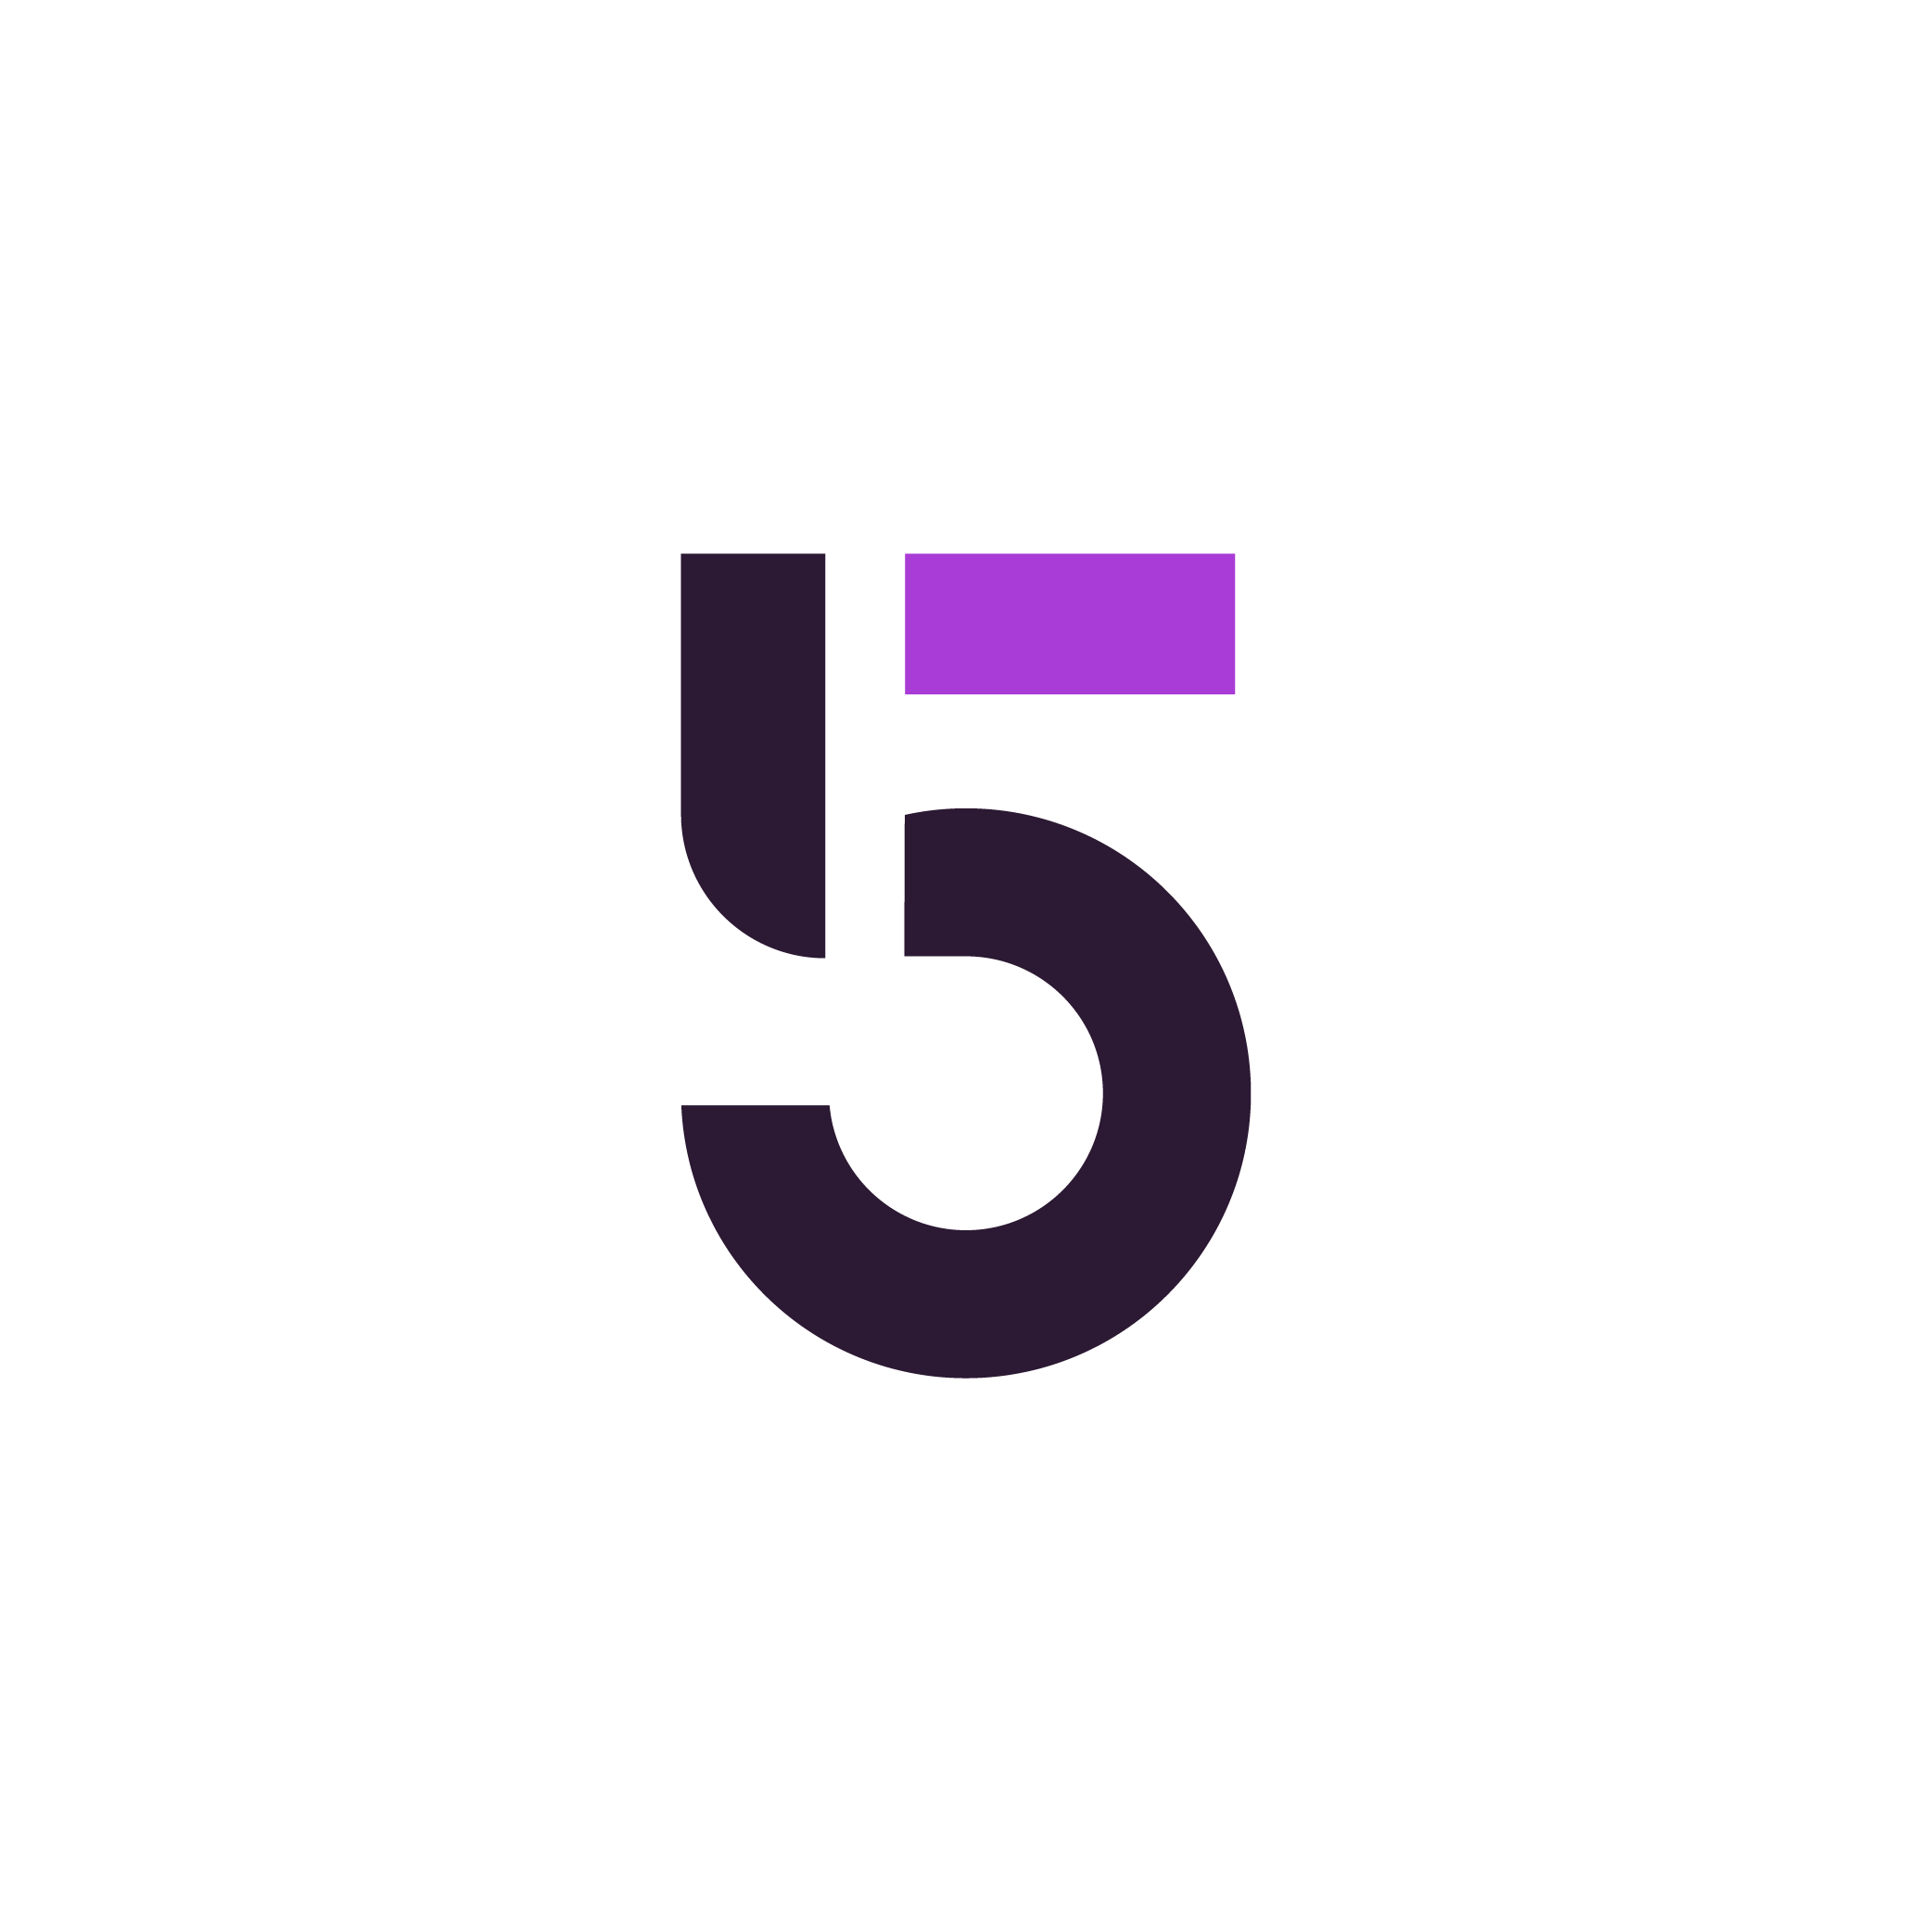 Five Binaries logo